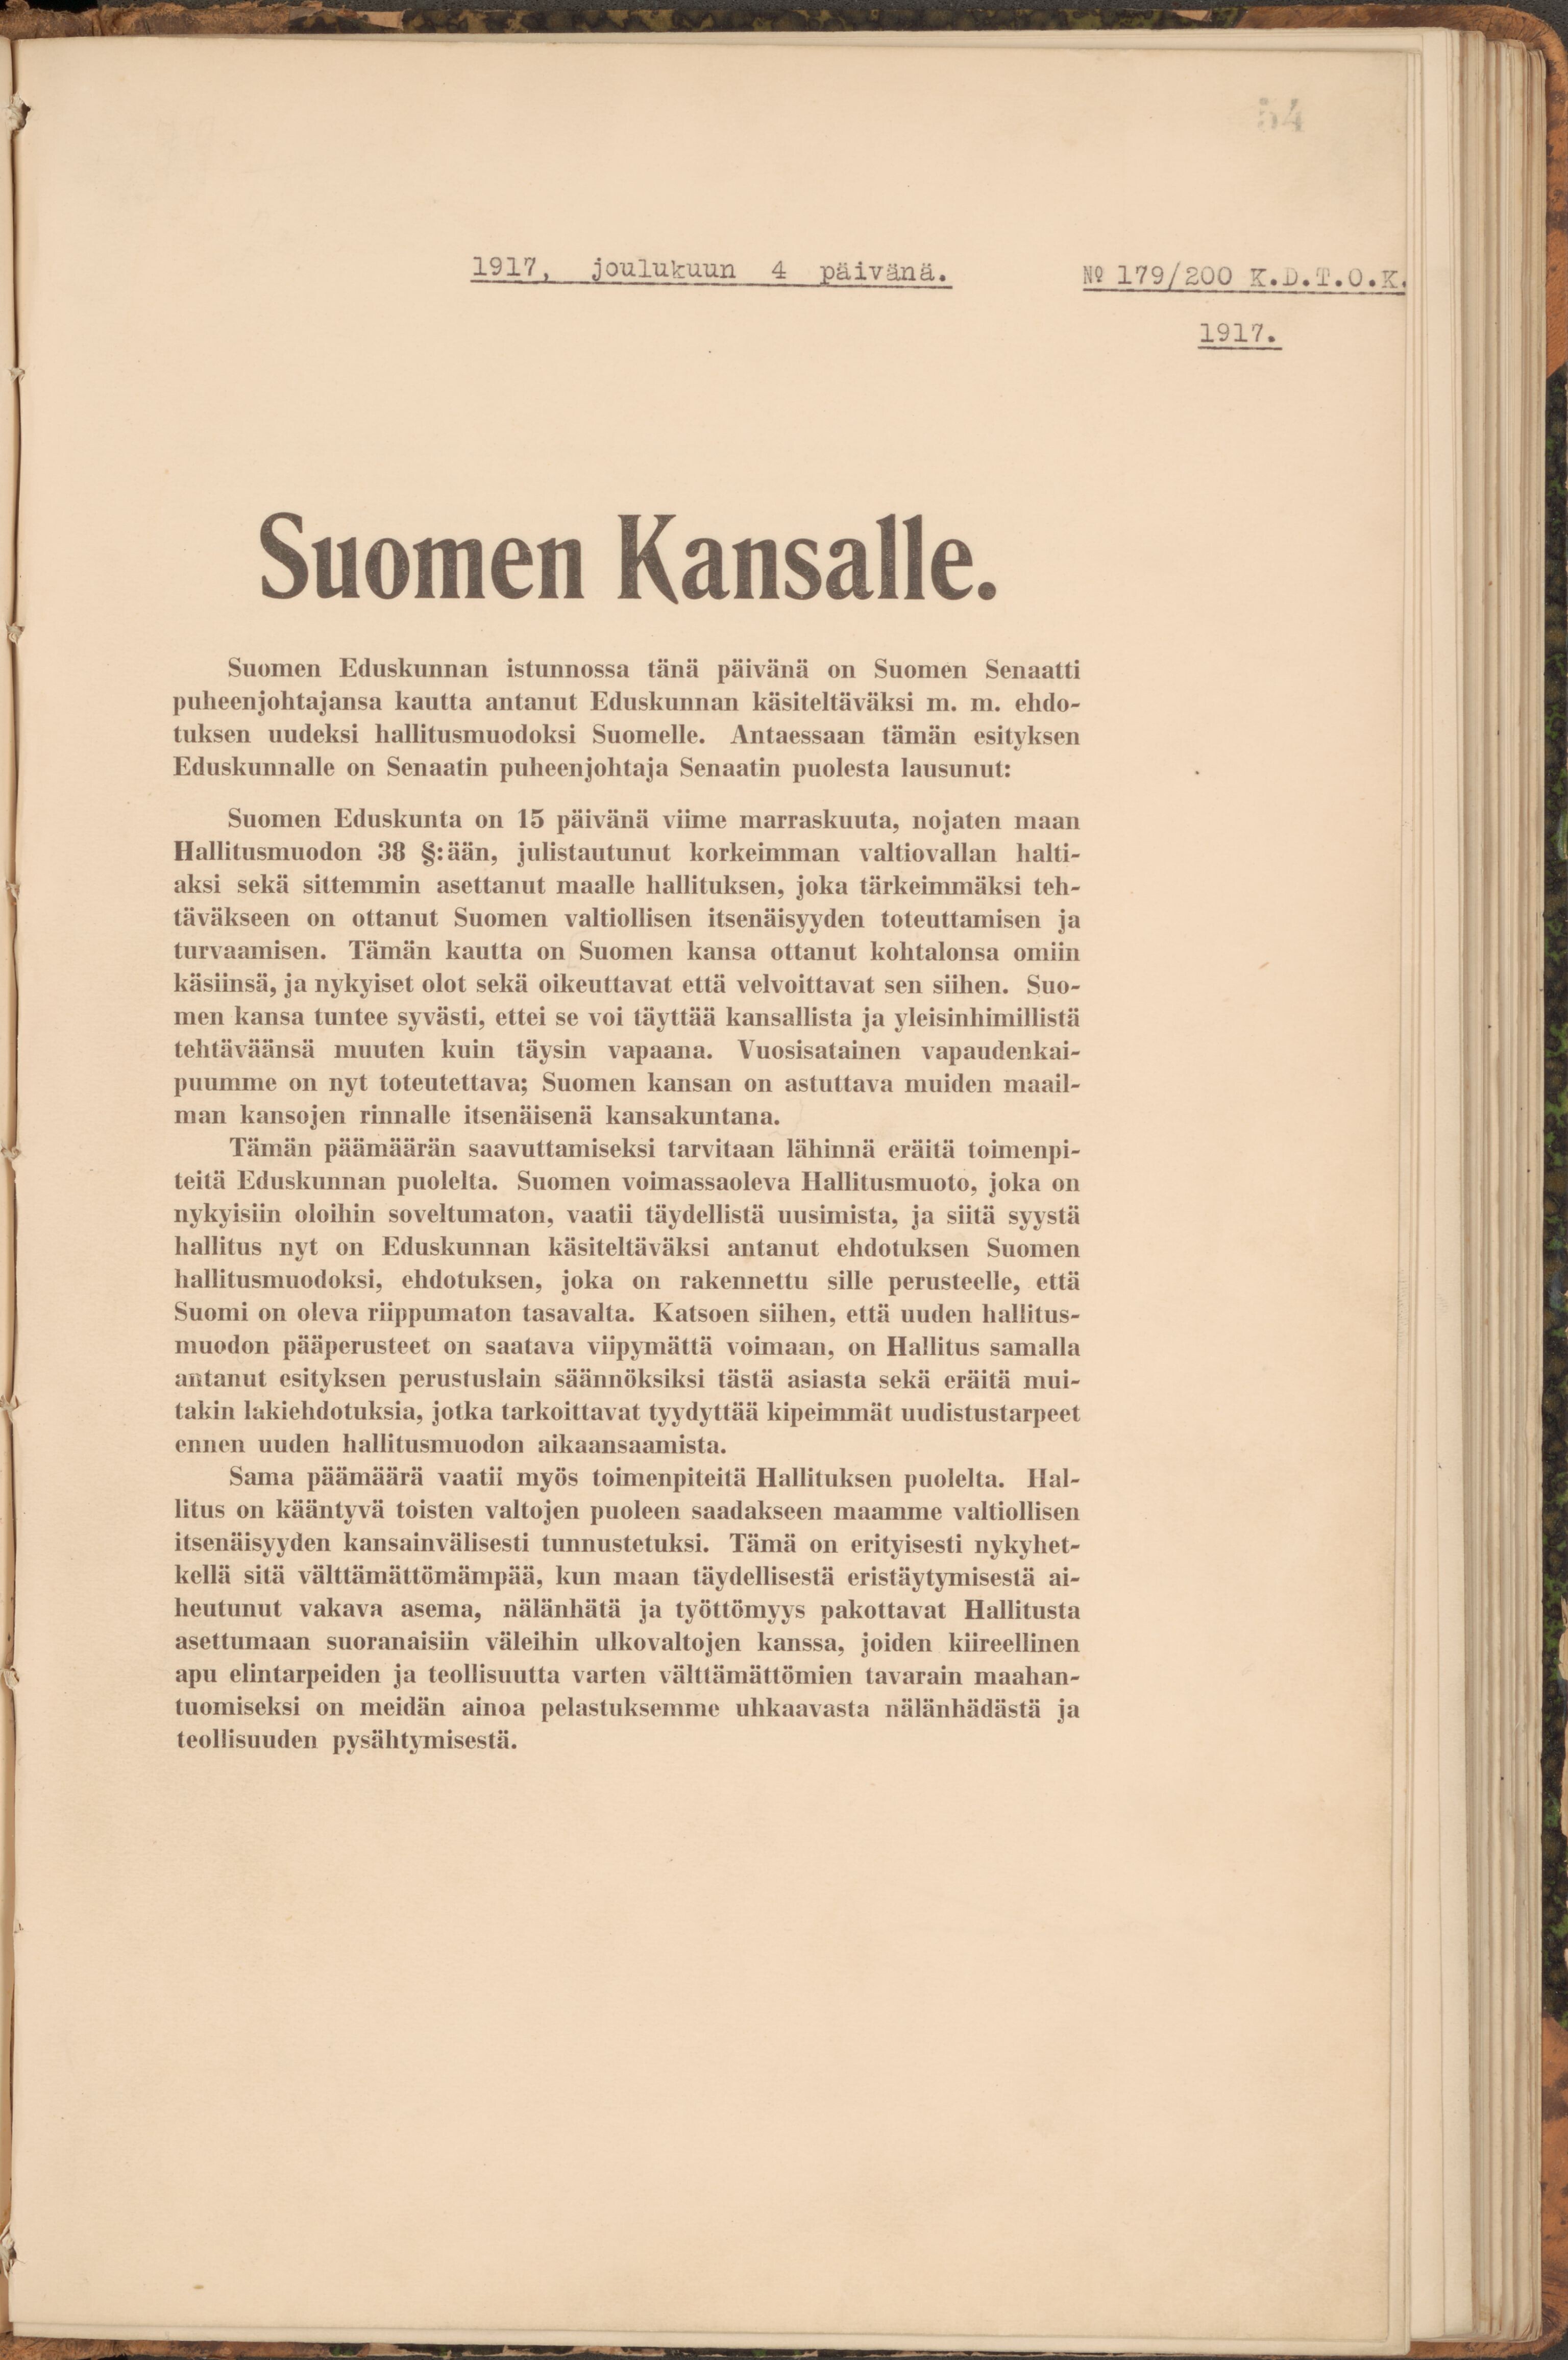 Kuva Suomen itsenäisyysjulistuksesta. Asiakirja on painettu ja sidottu kirjaan.